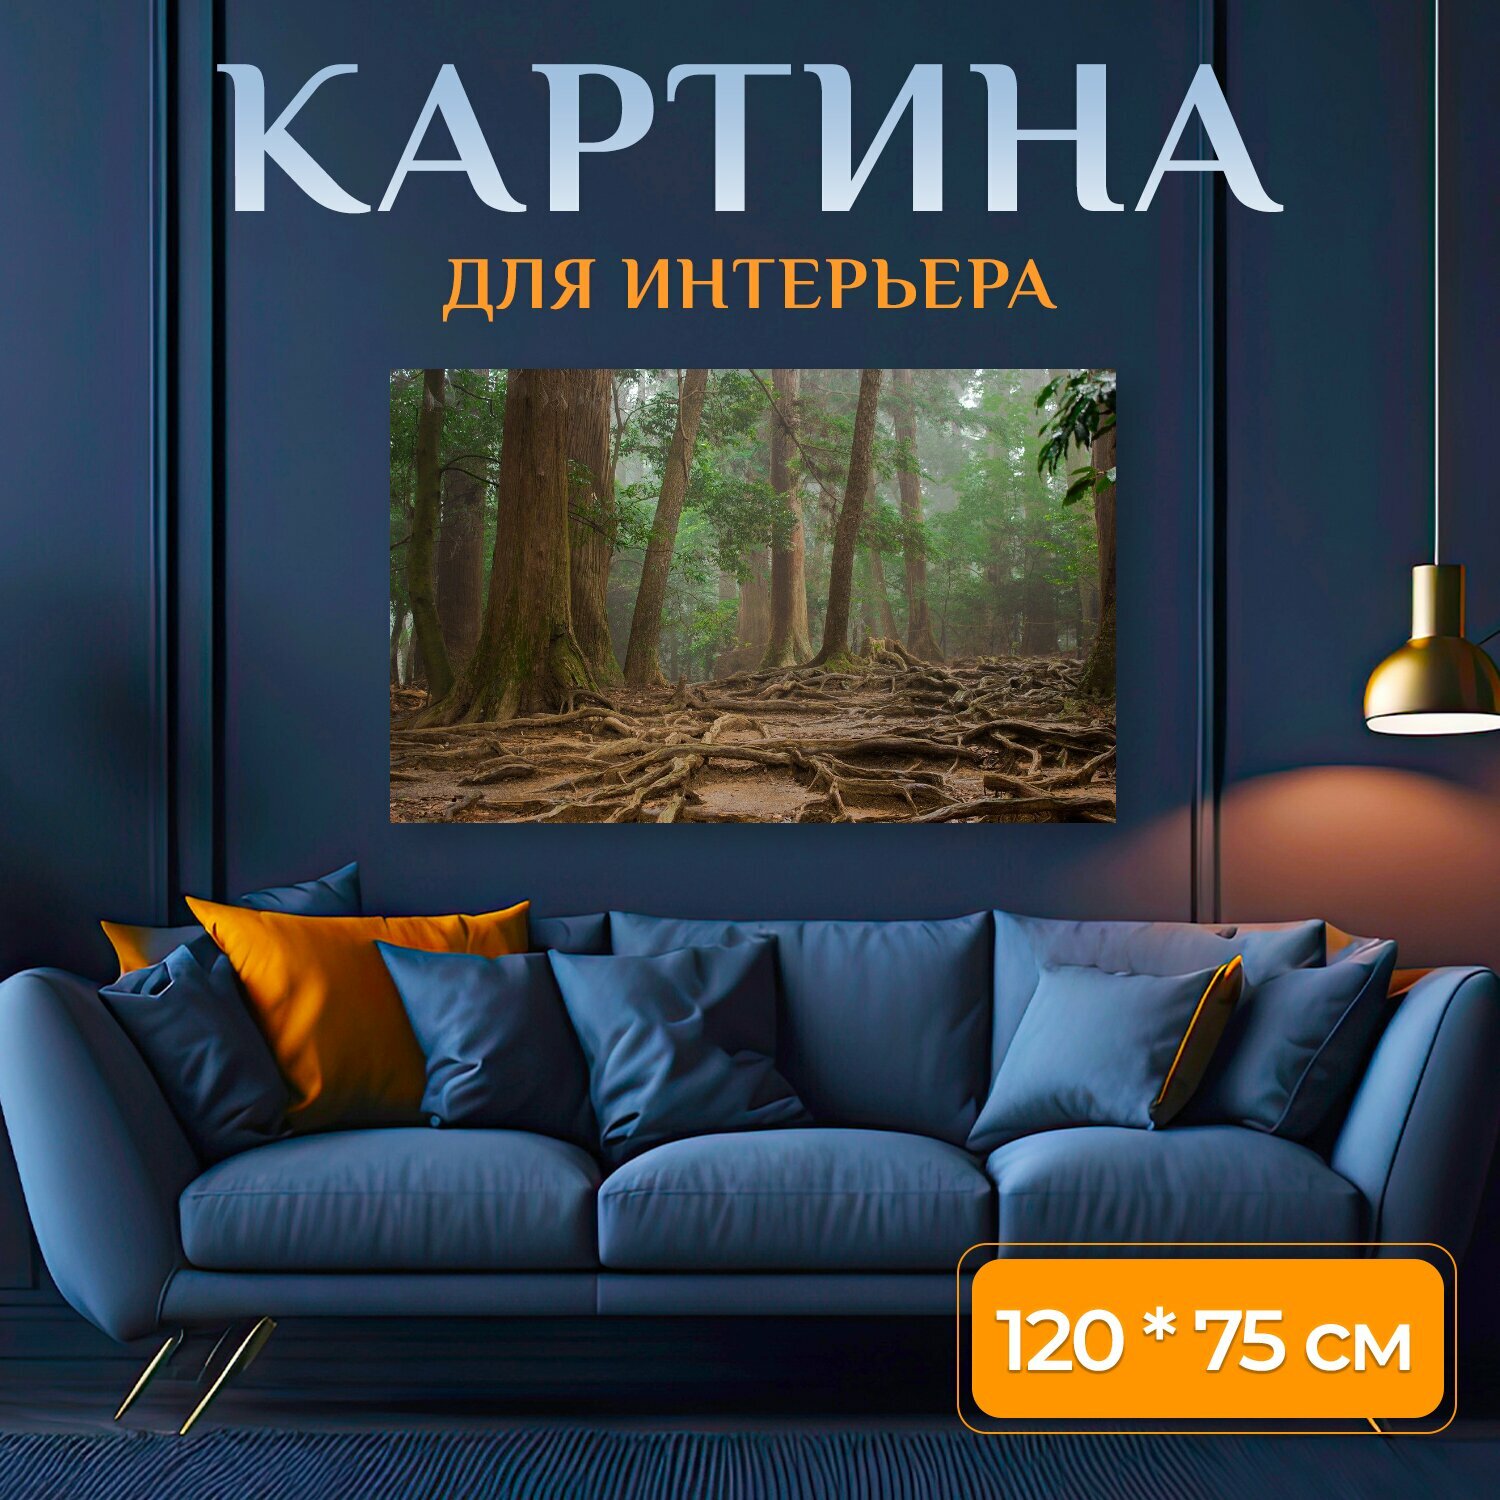 Картина на холсте "Деревья, имущество, лес" на подрамнике 120х75 см. для интерьера